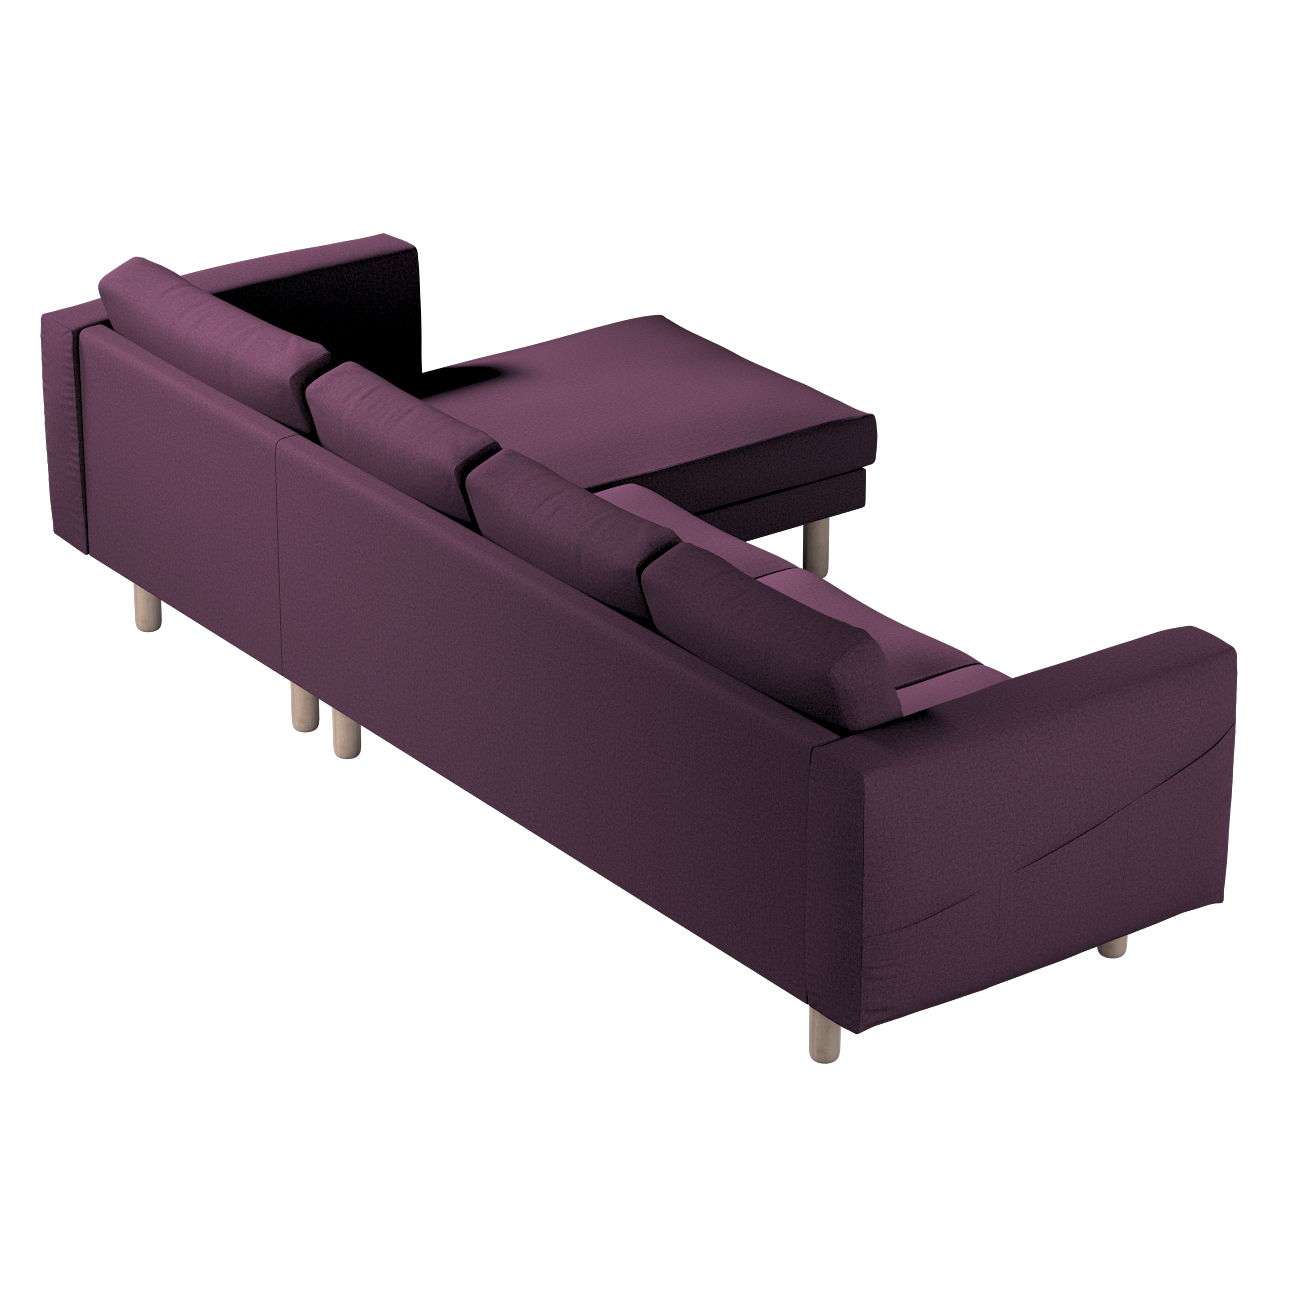 Bezug für Norsborg 4-Sitzer Sofa mit Recamiere, pflaume, Norsborg Bezug für günstig online kaufen